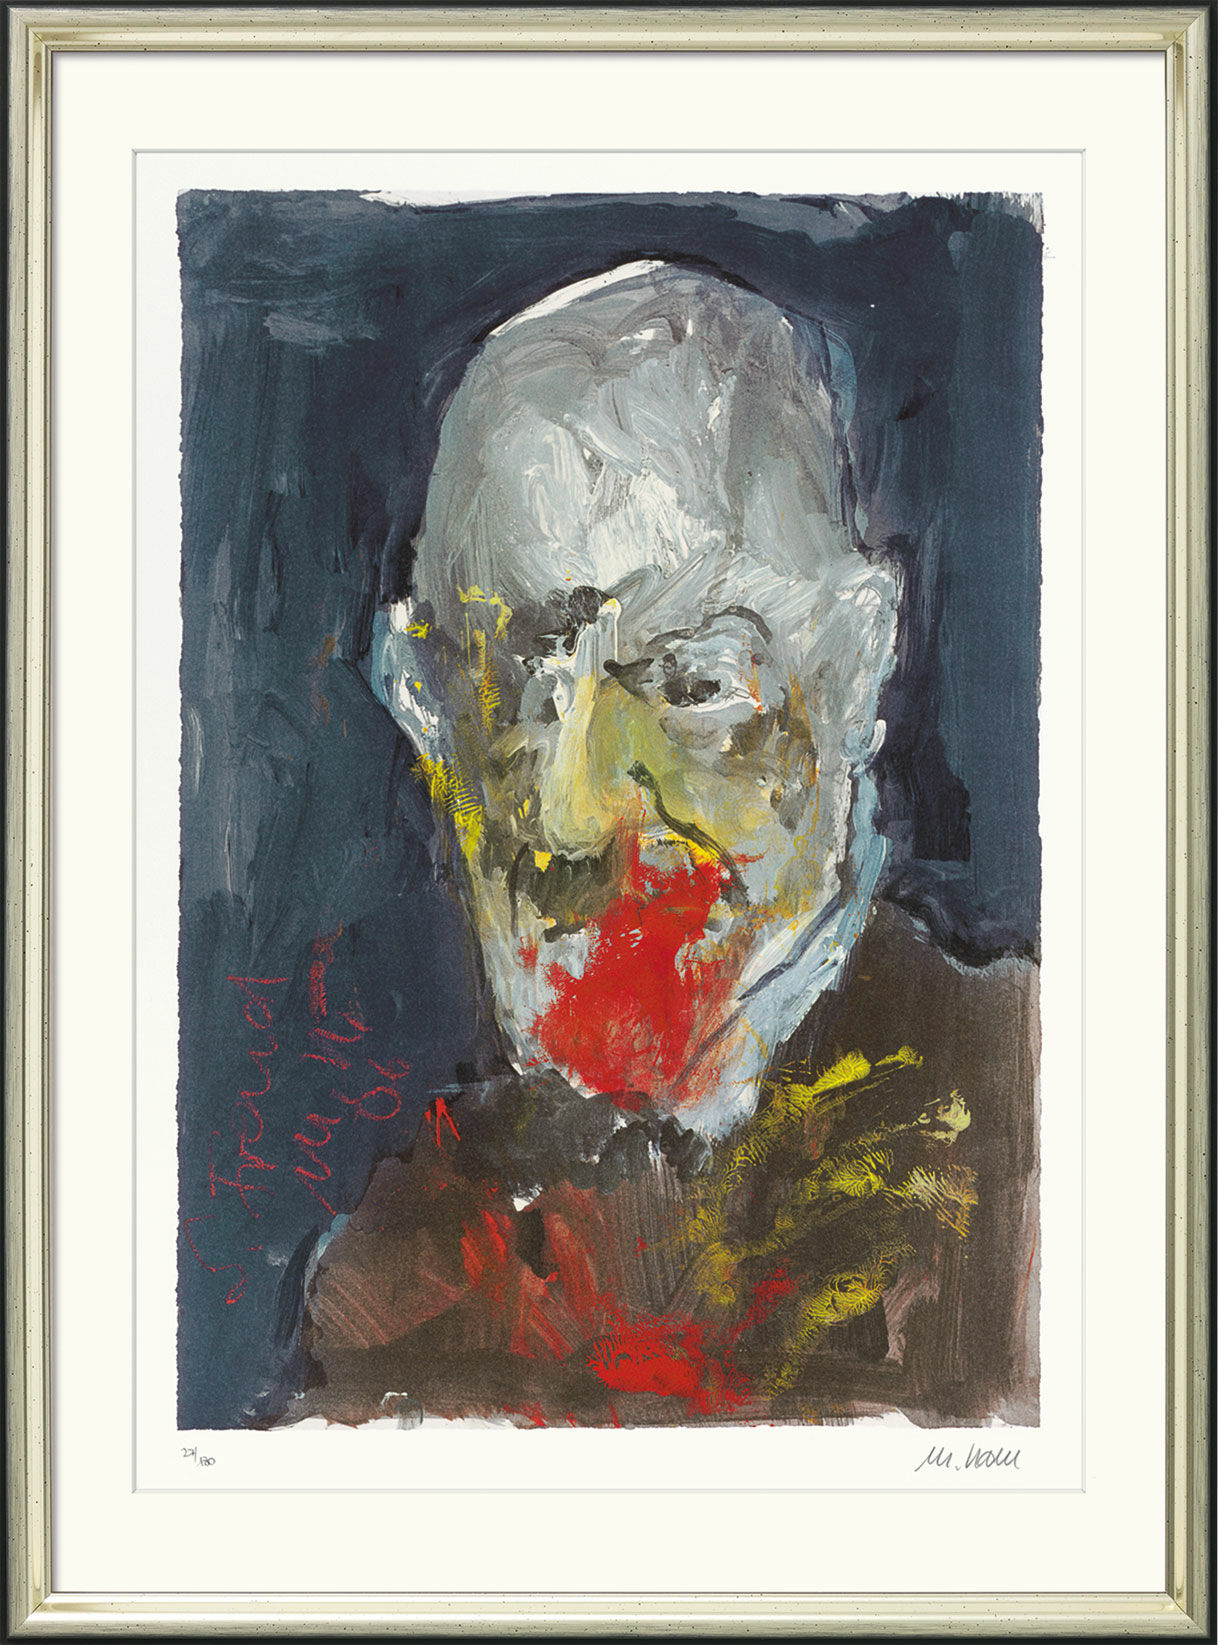 Bild "Sigmund Freud" (2006), gerahmt von Armin Mueller-Stahl